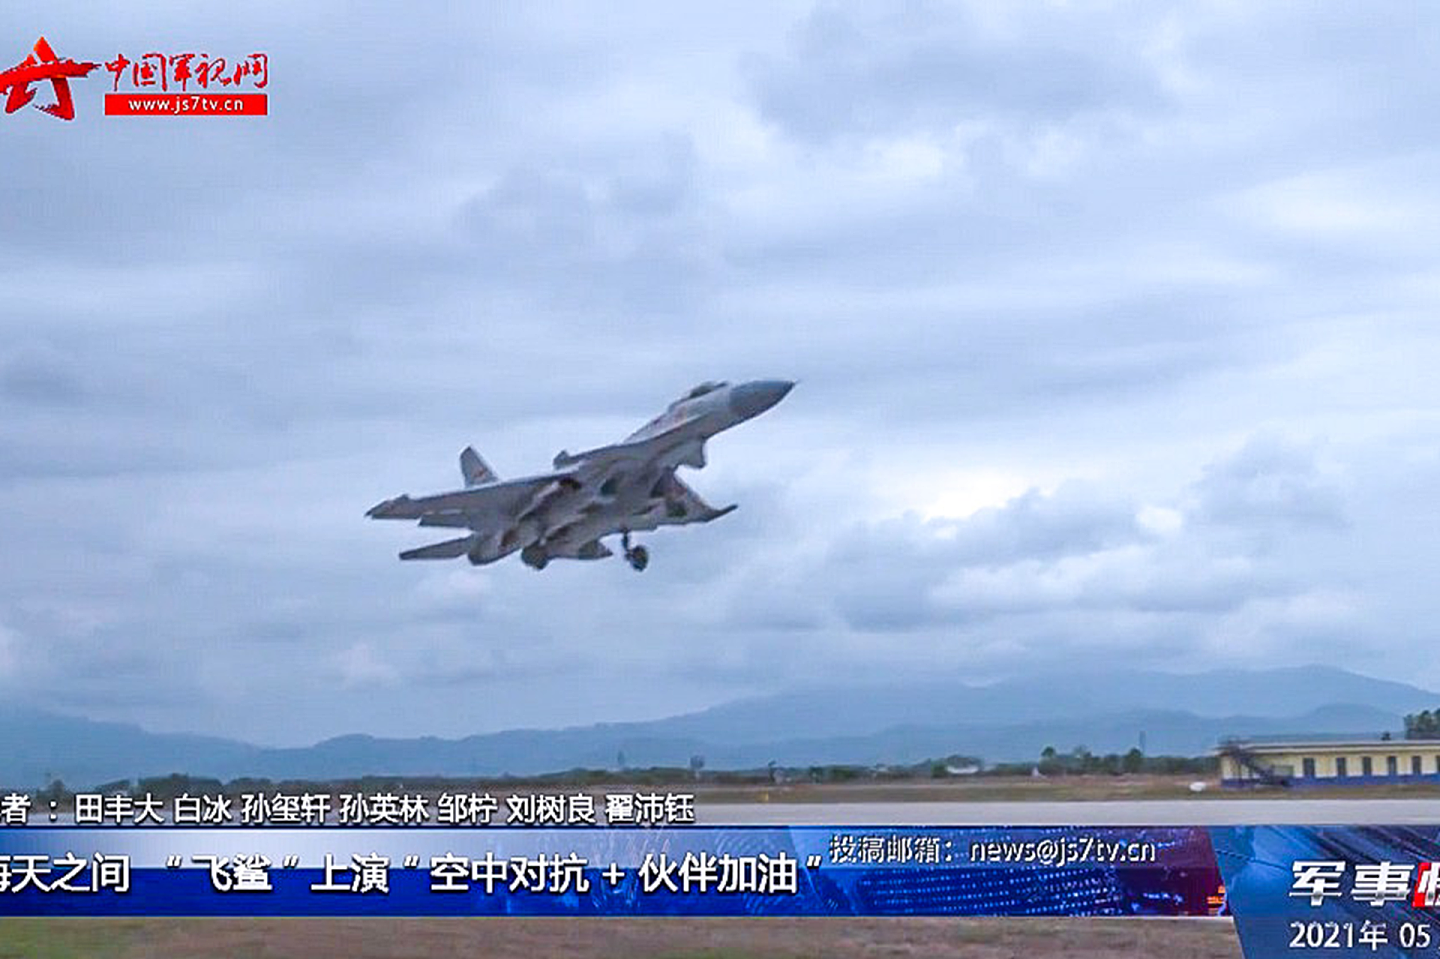 多批次歼-15开展空中对抗与空中“伙伴加油”训练。图为歼-15起飞。（中国军视网视频截图）